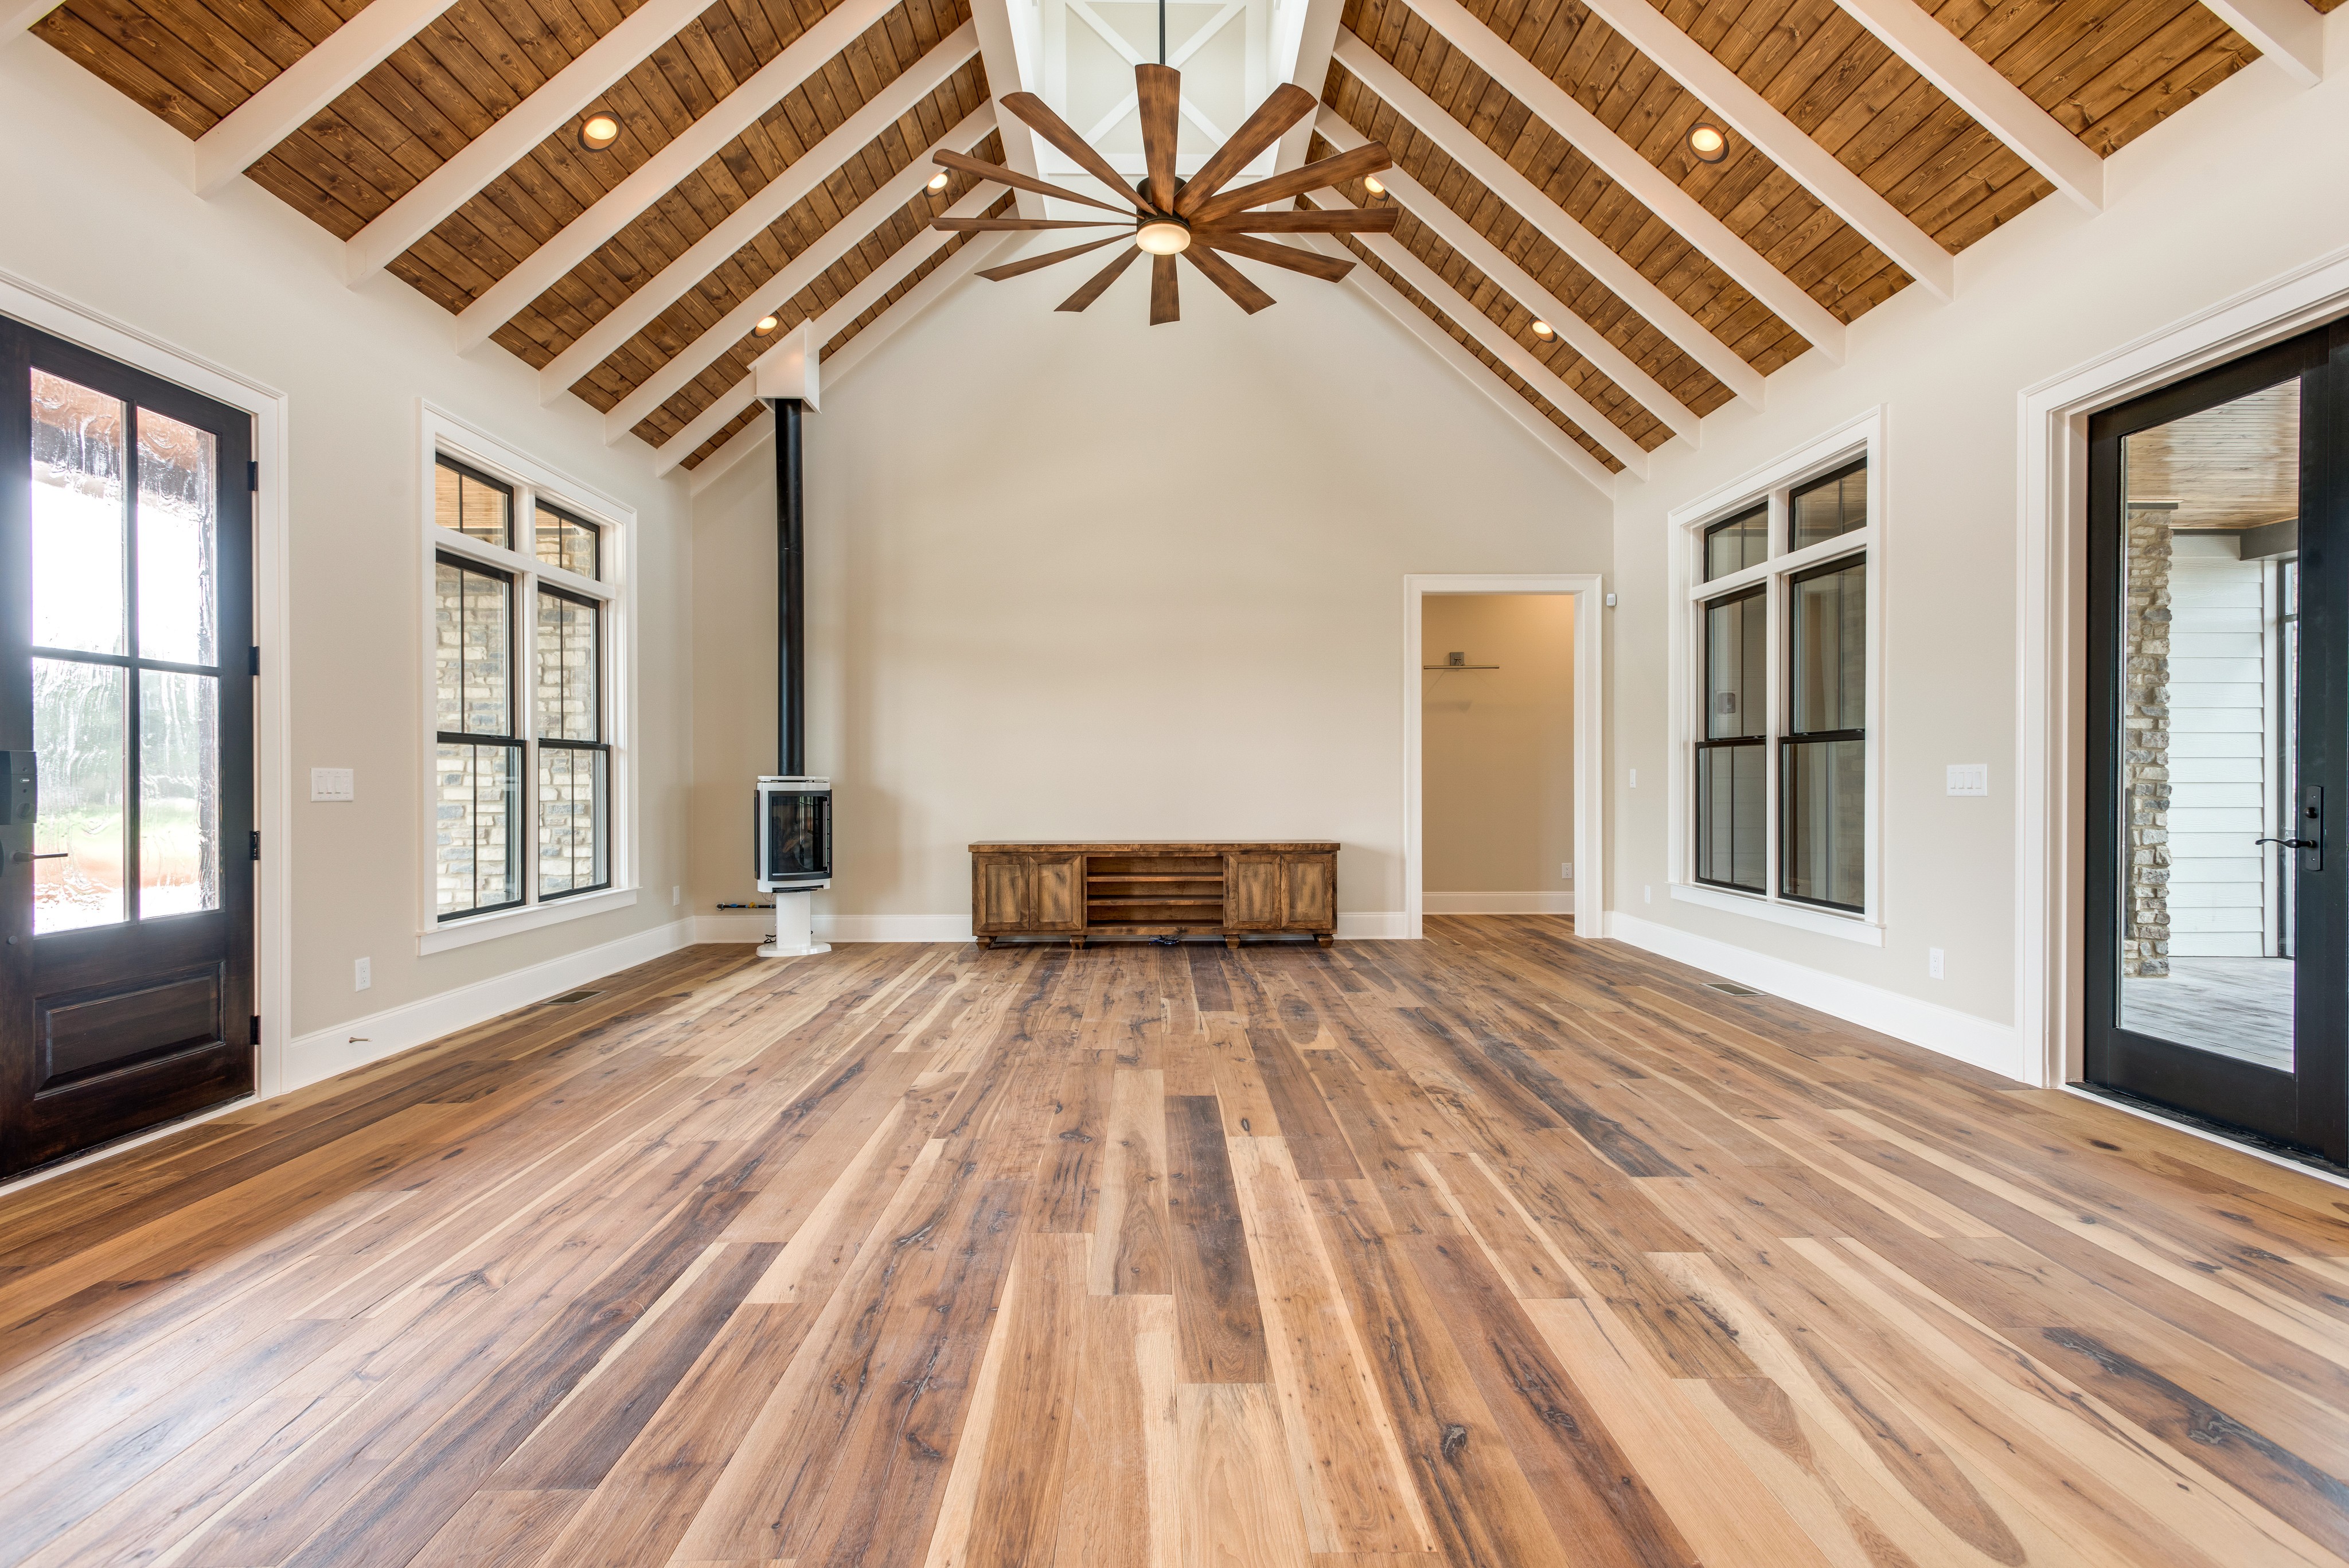 Real Wood Floors Linkedin, Pics Of Hardwood Floors